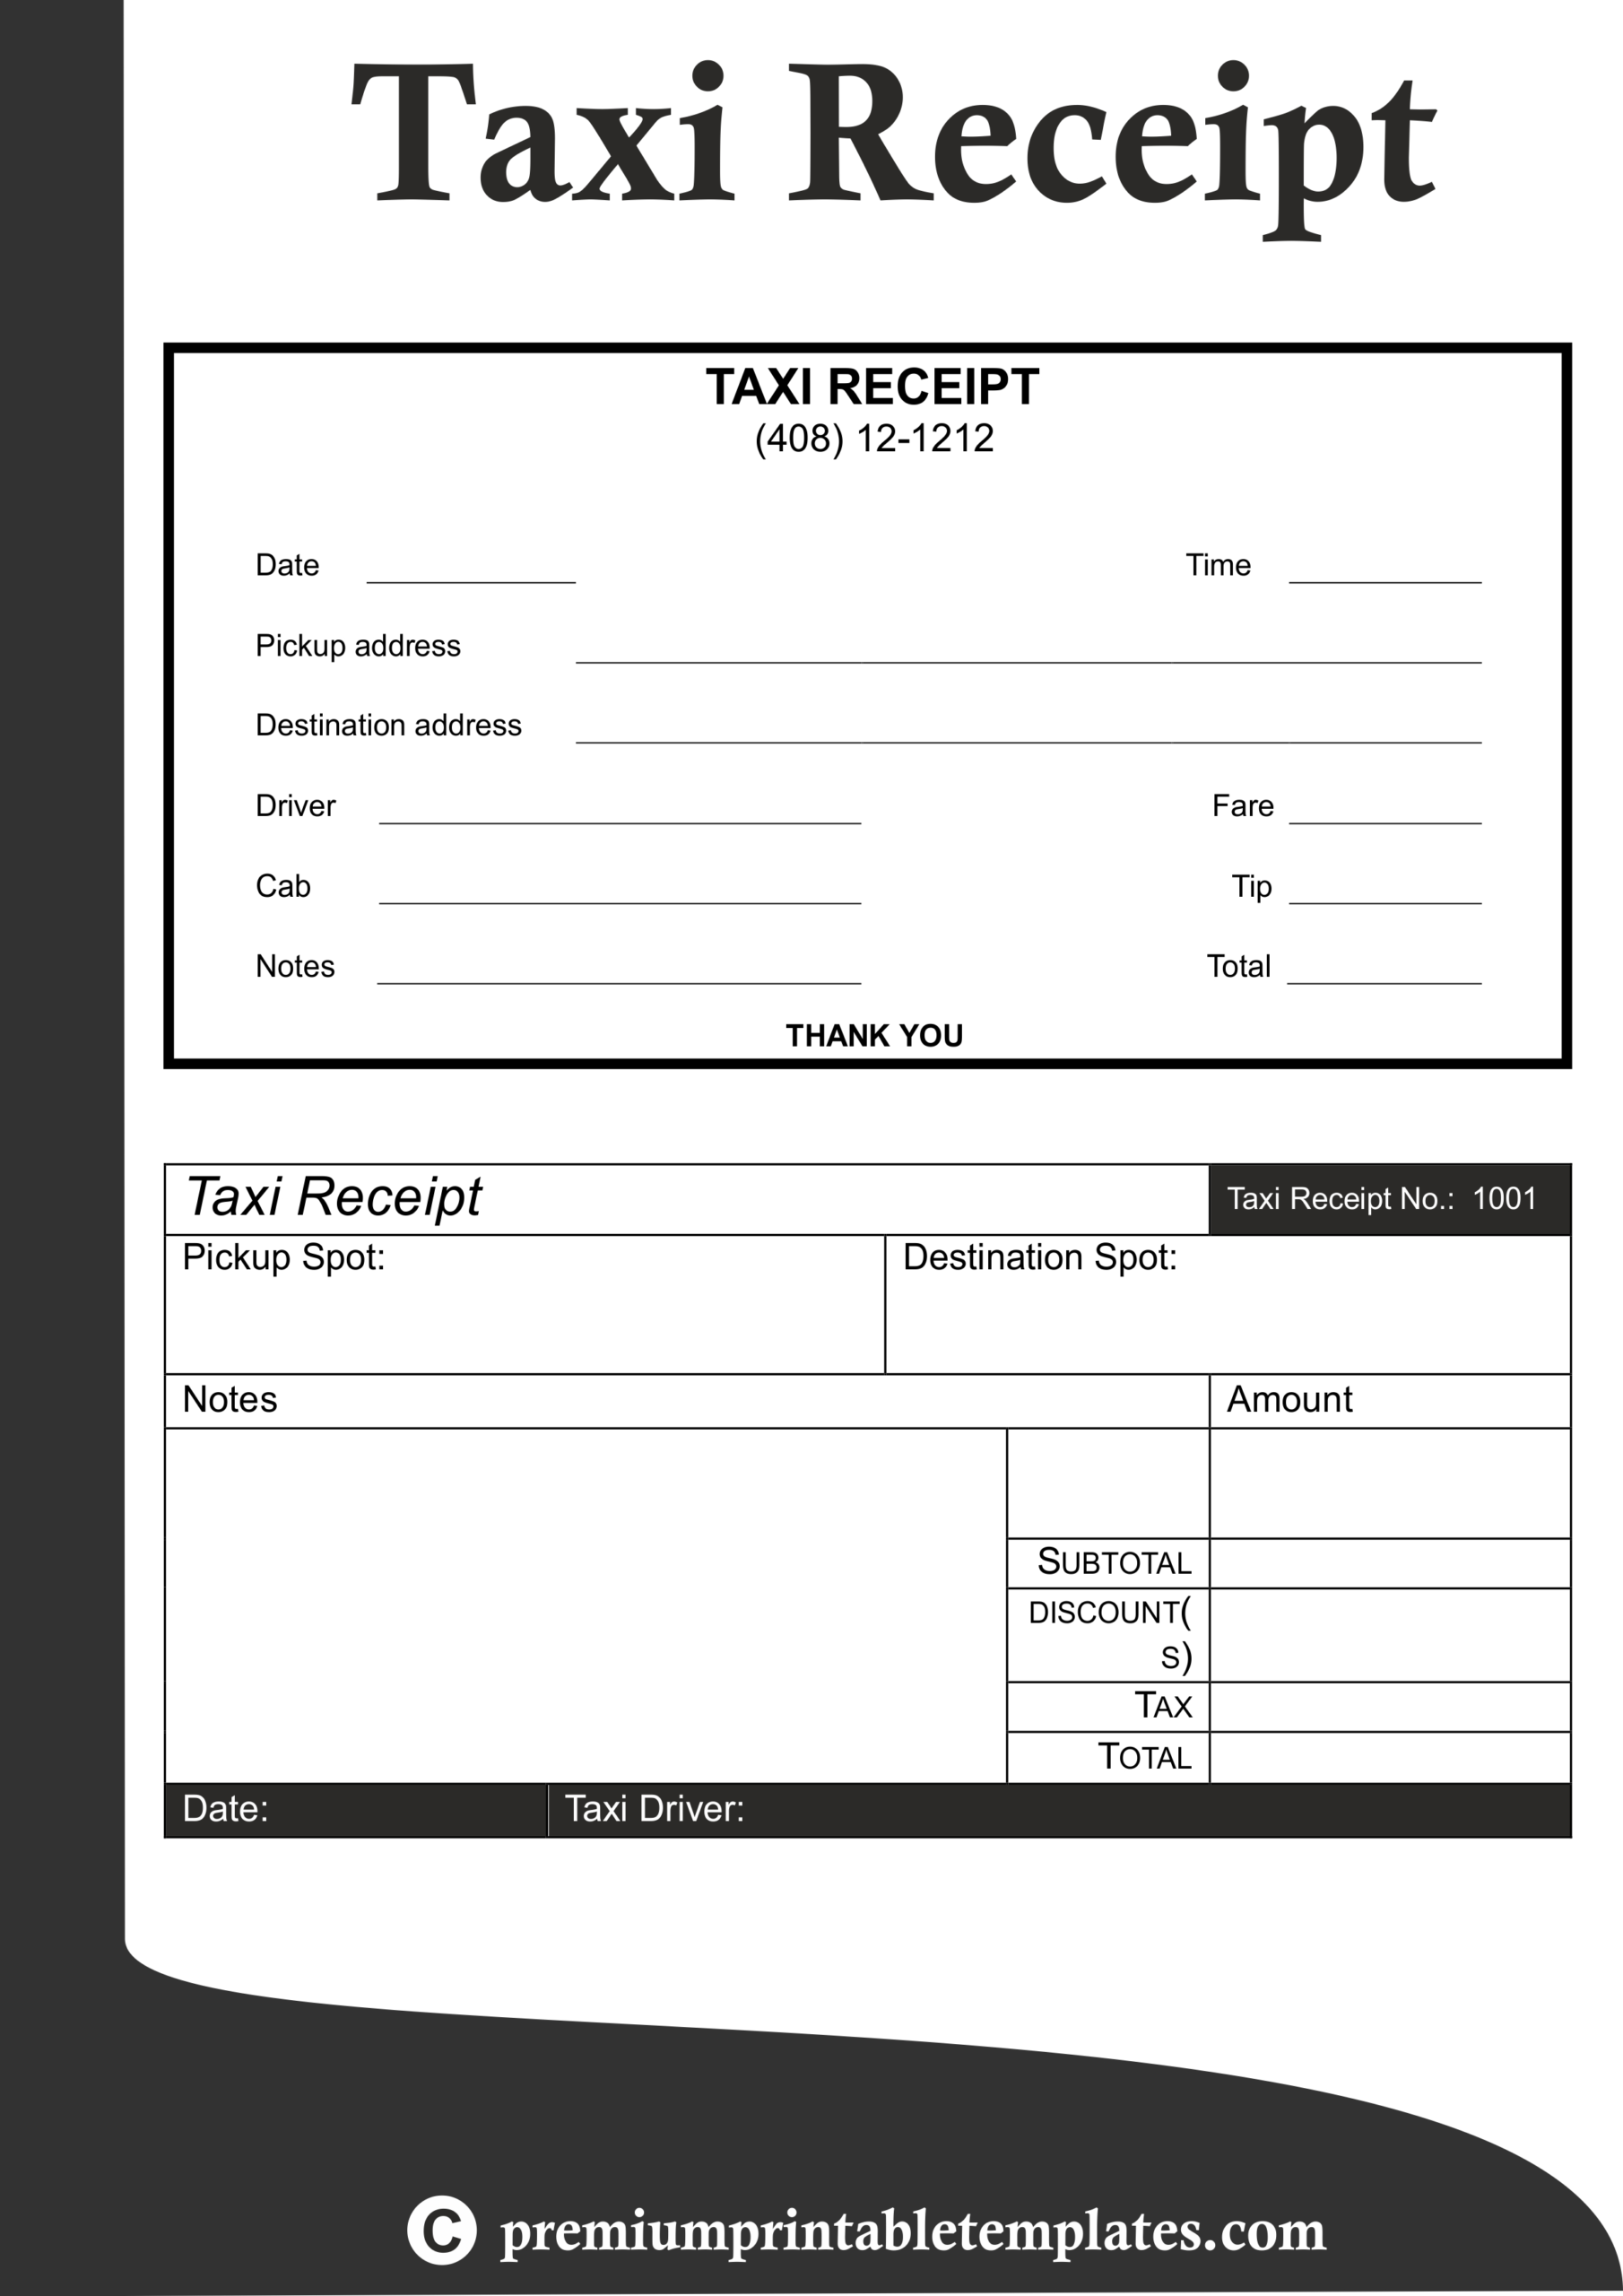 Taxi Receipt Templates | Receipt Template, Templates, Taxi For Fake Credit Card Receipt Template